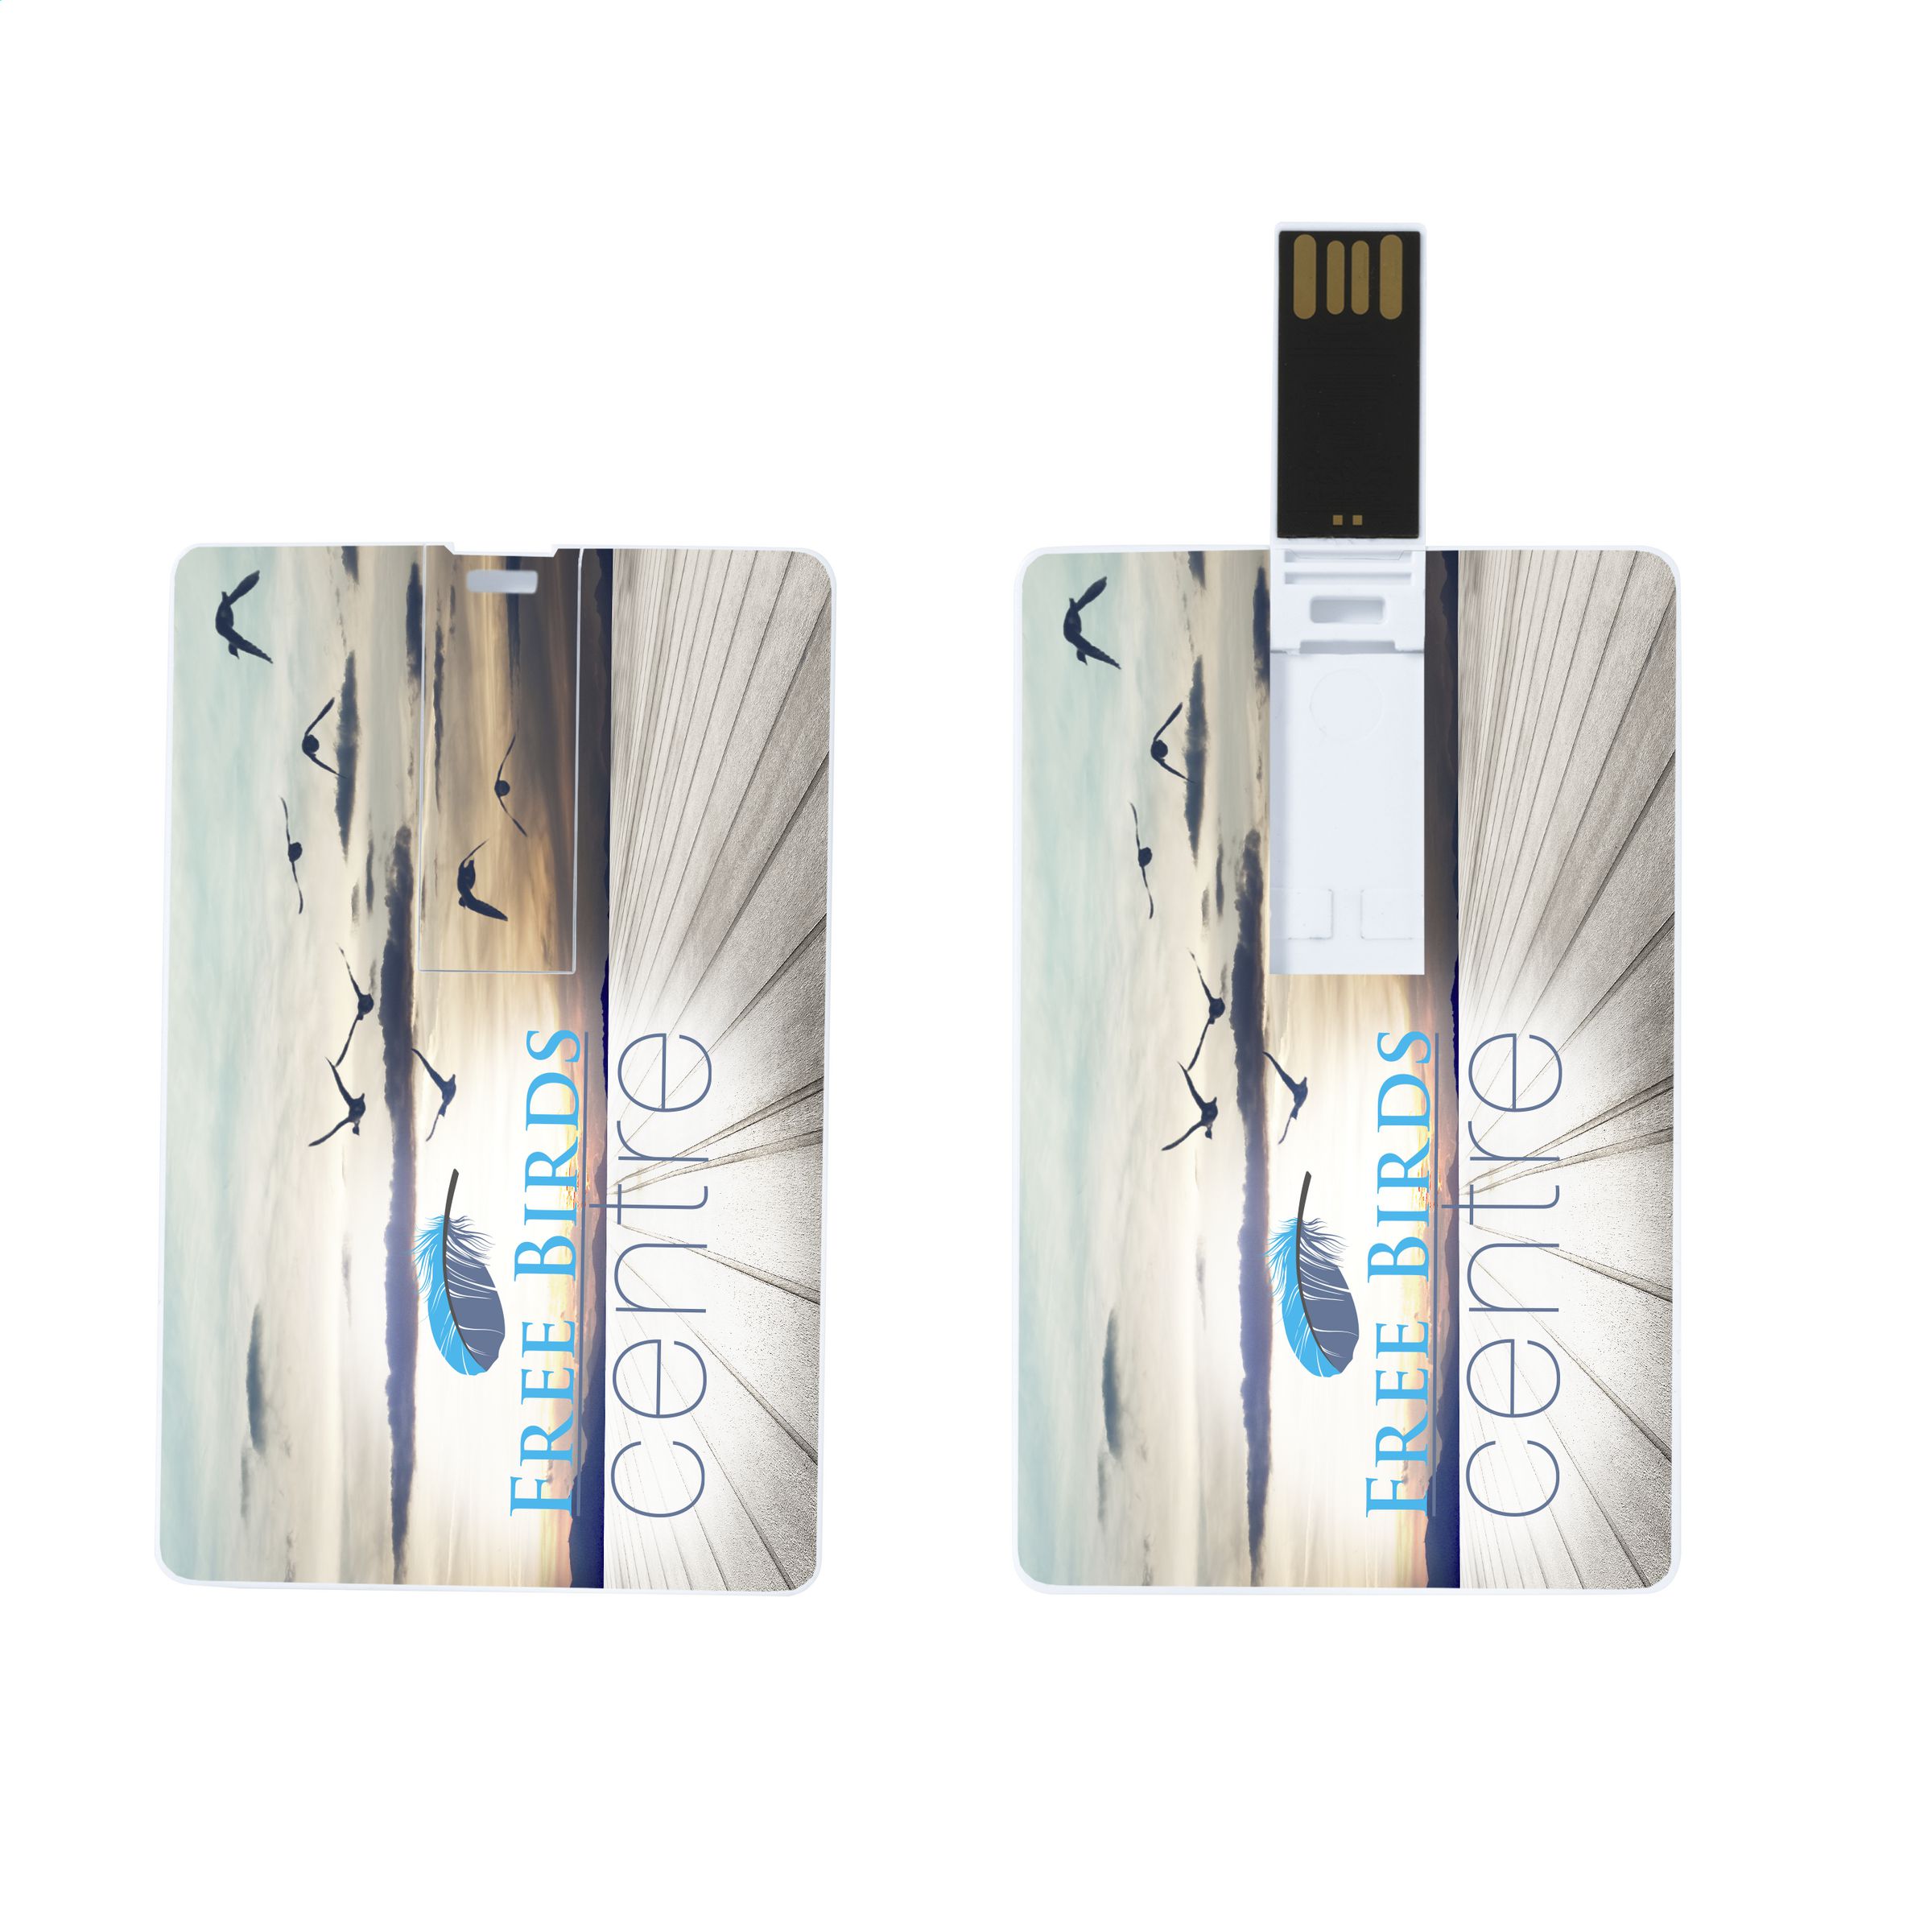 SlimCard USB 2.0 - Bristol - Cabañas de Ebro